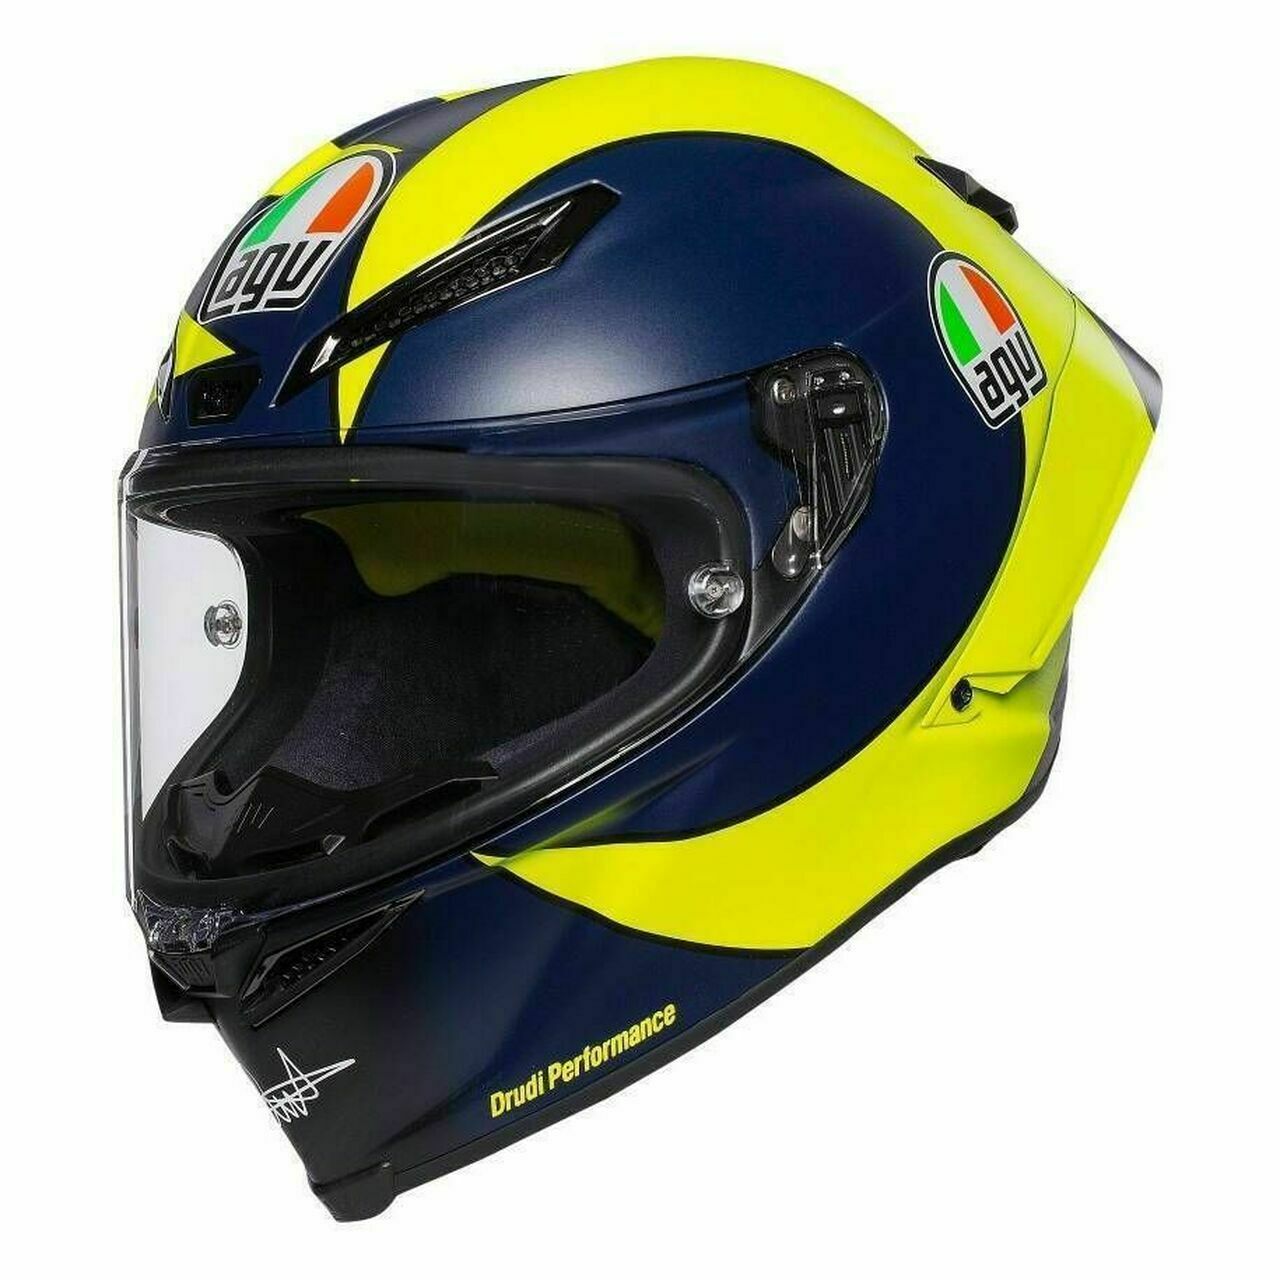 AGV Pista GP RR Helmet - Soleluna 2019